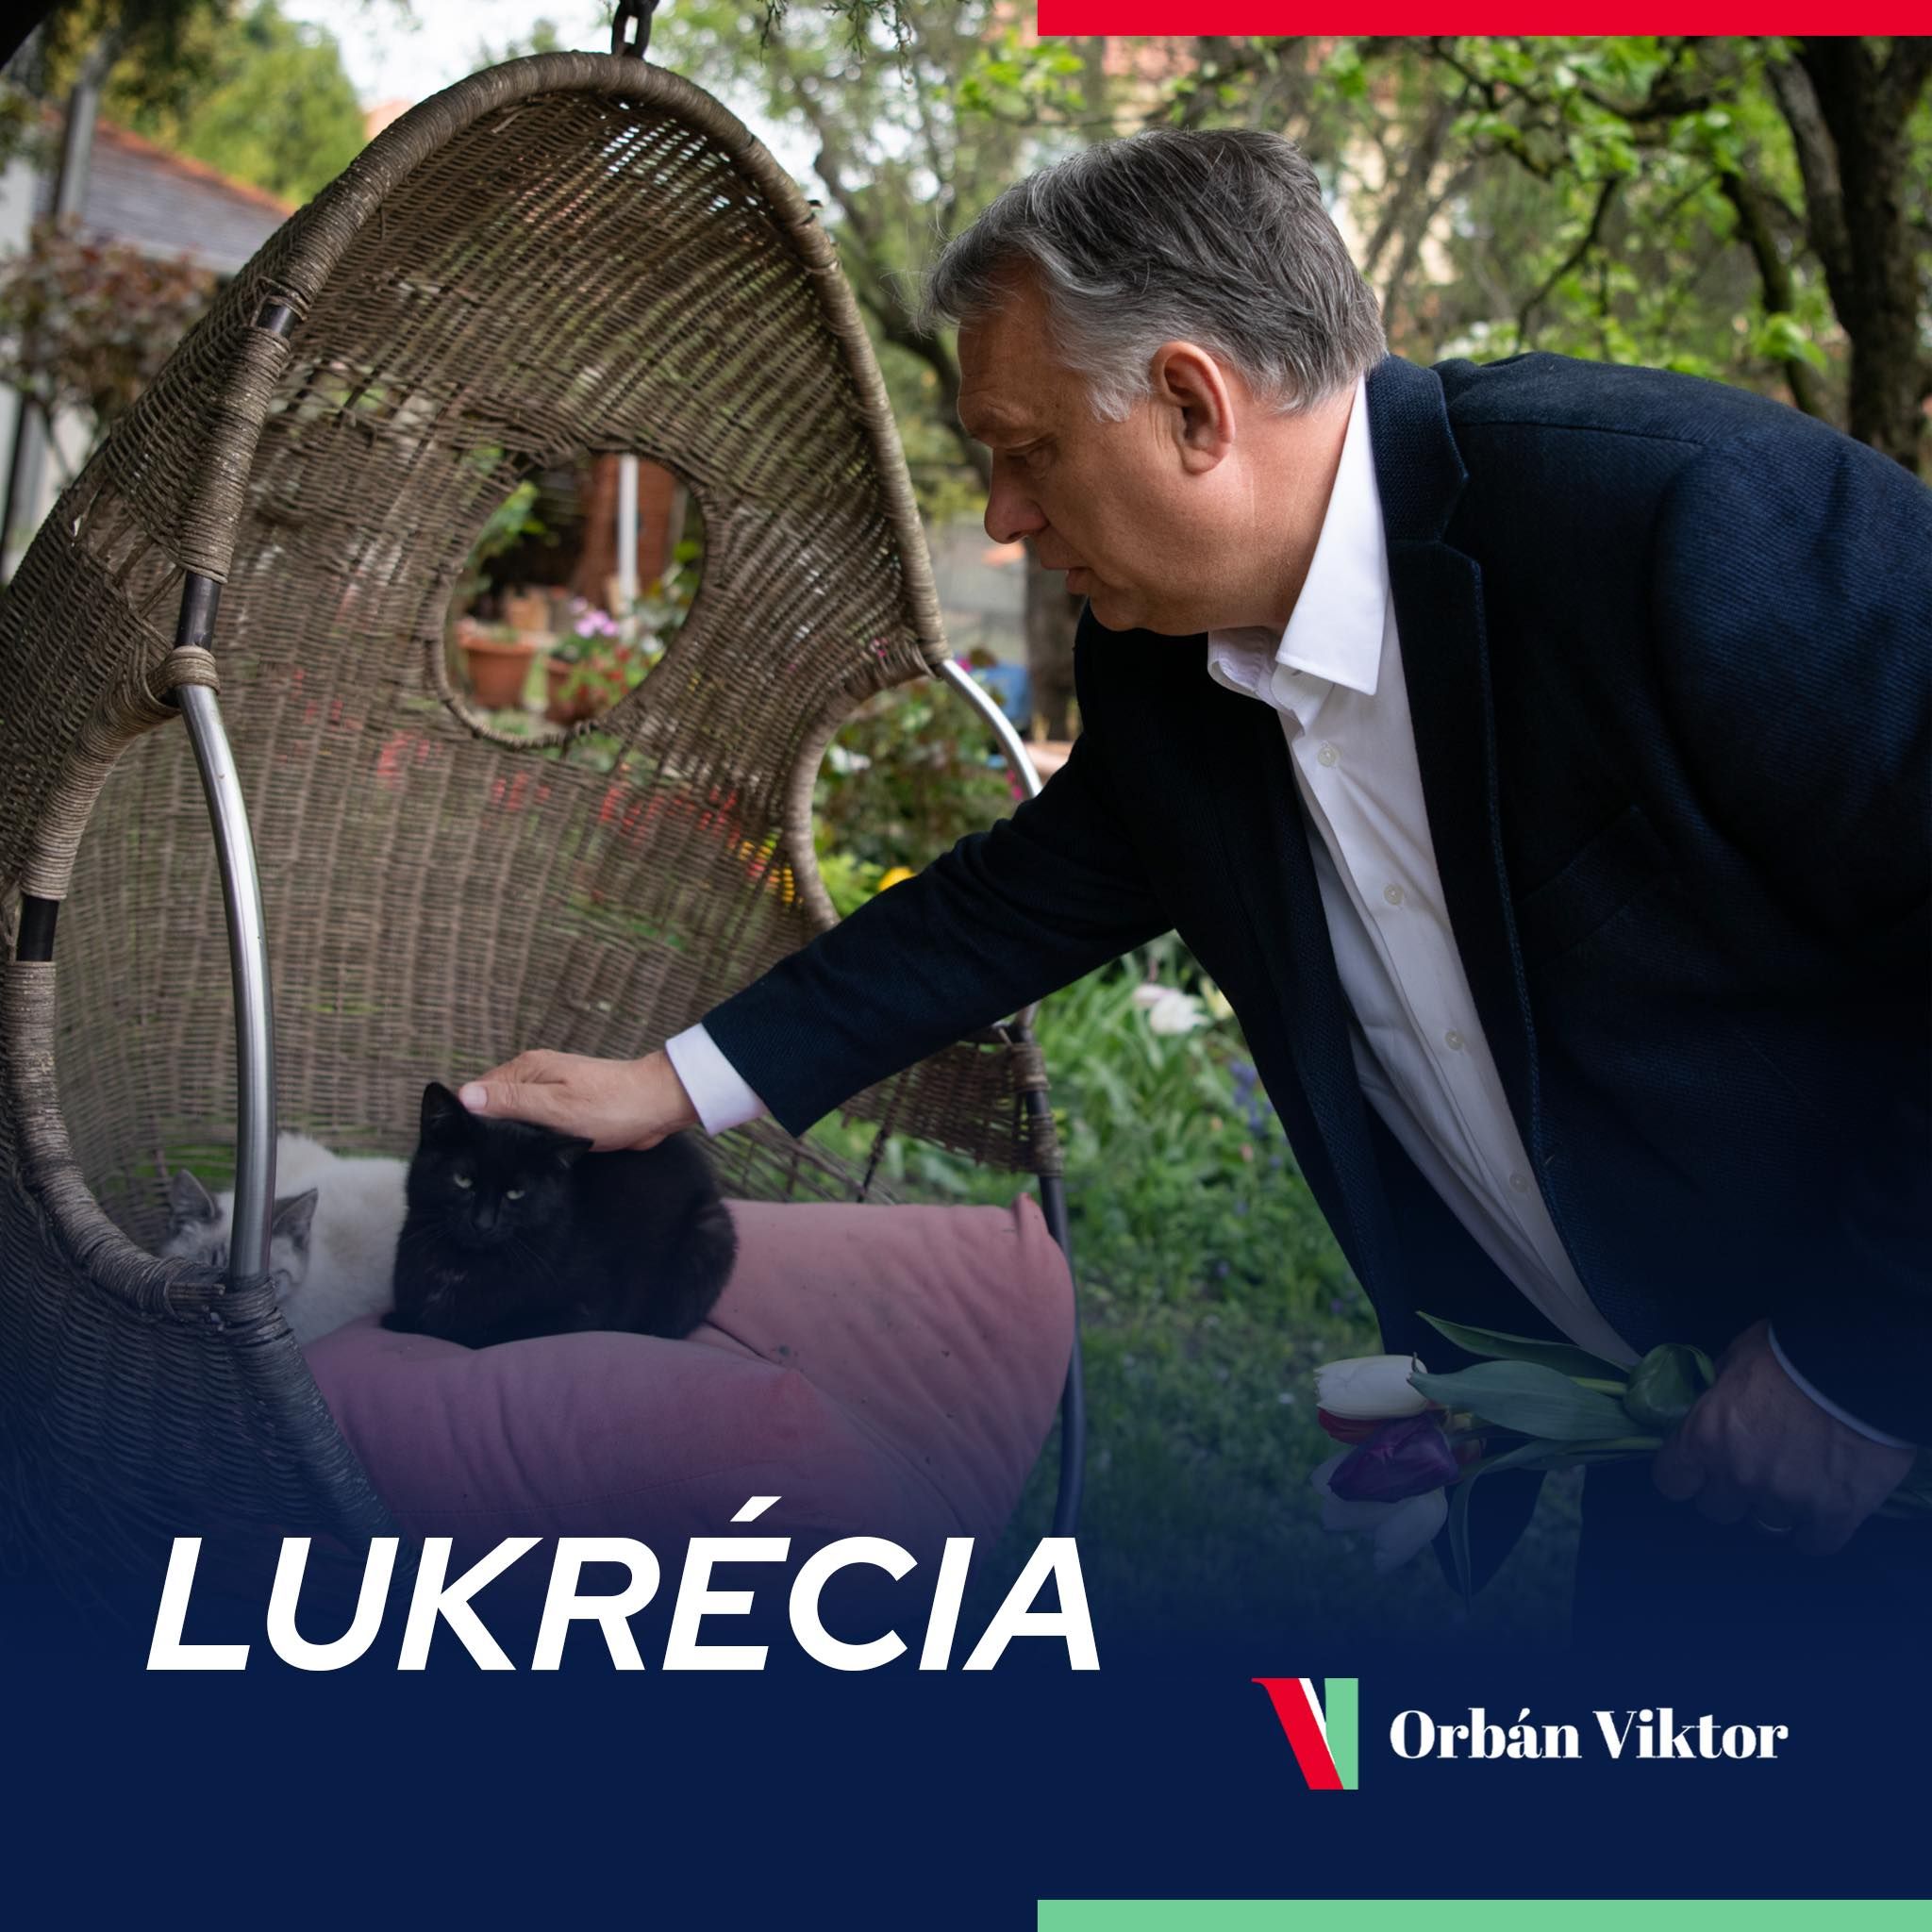 Orbán meglepő fotót osztott meg magáról